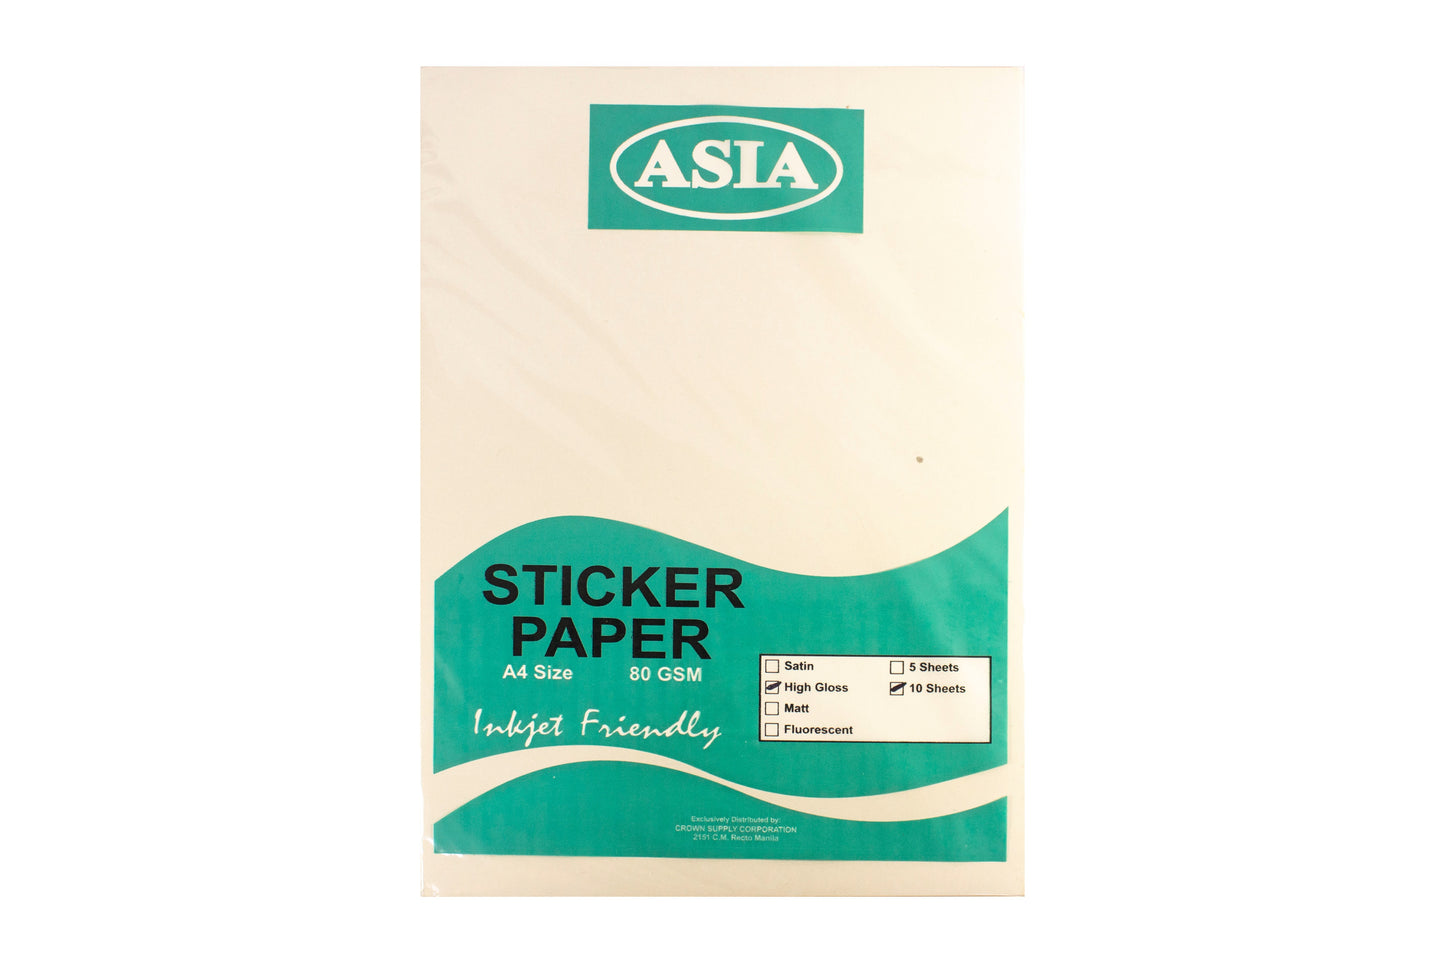 Asia Sticker Paper 80gsm